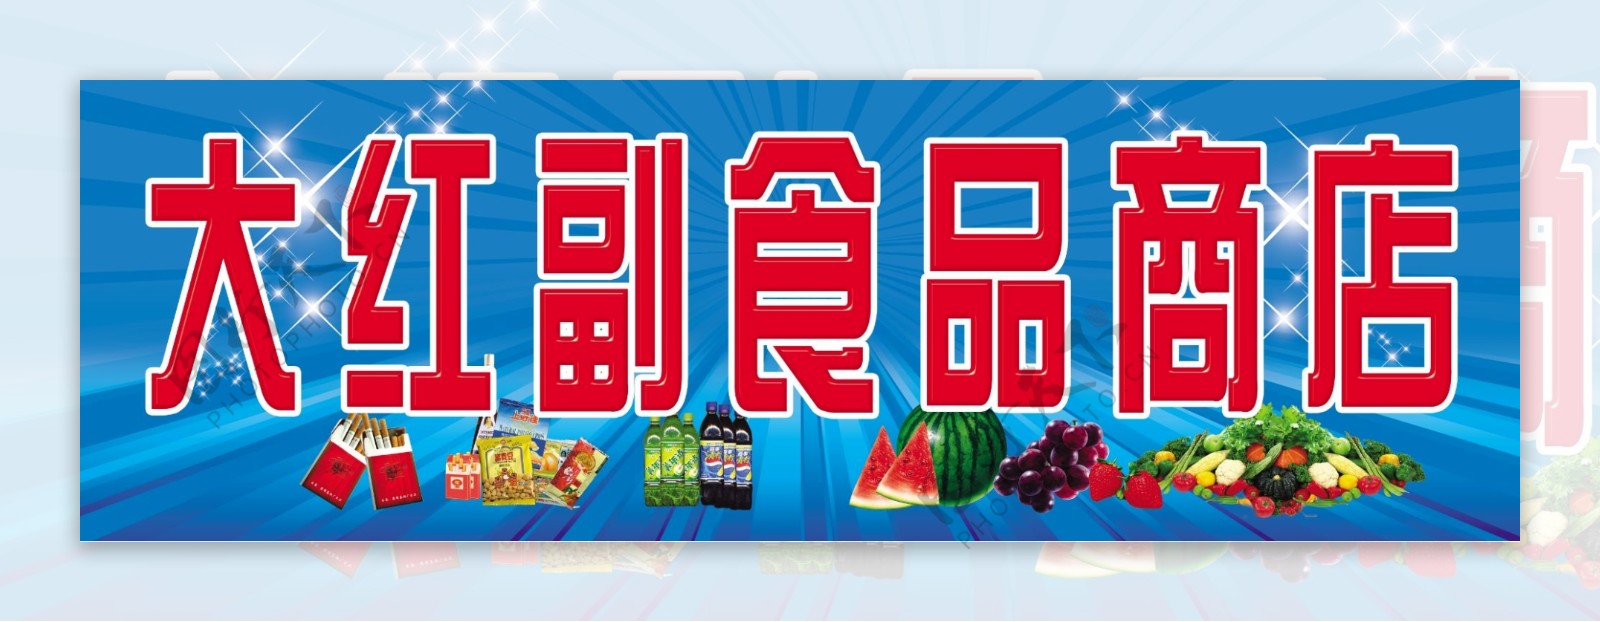 大红副食品商店牌匾图片